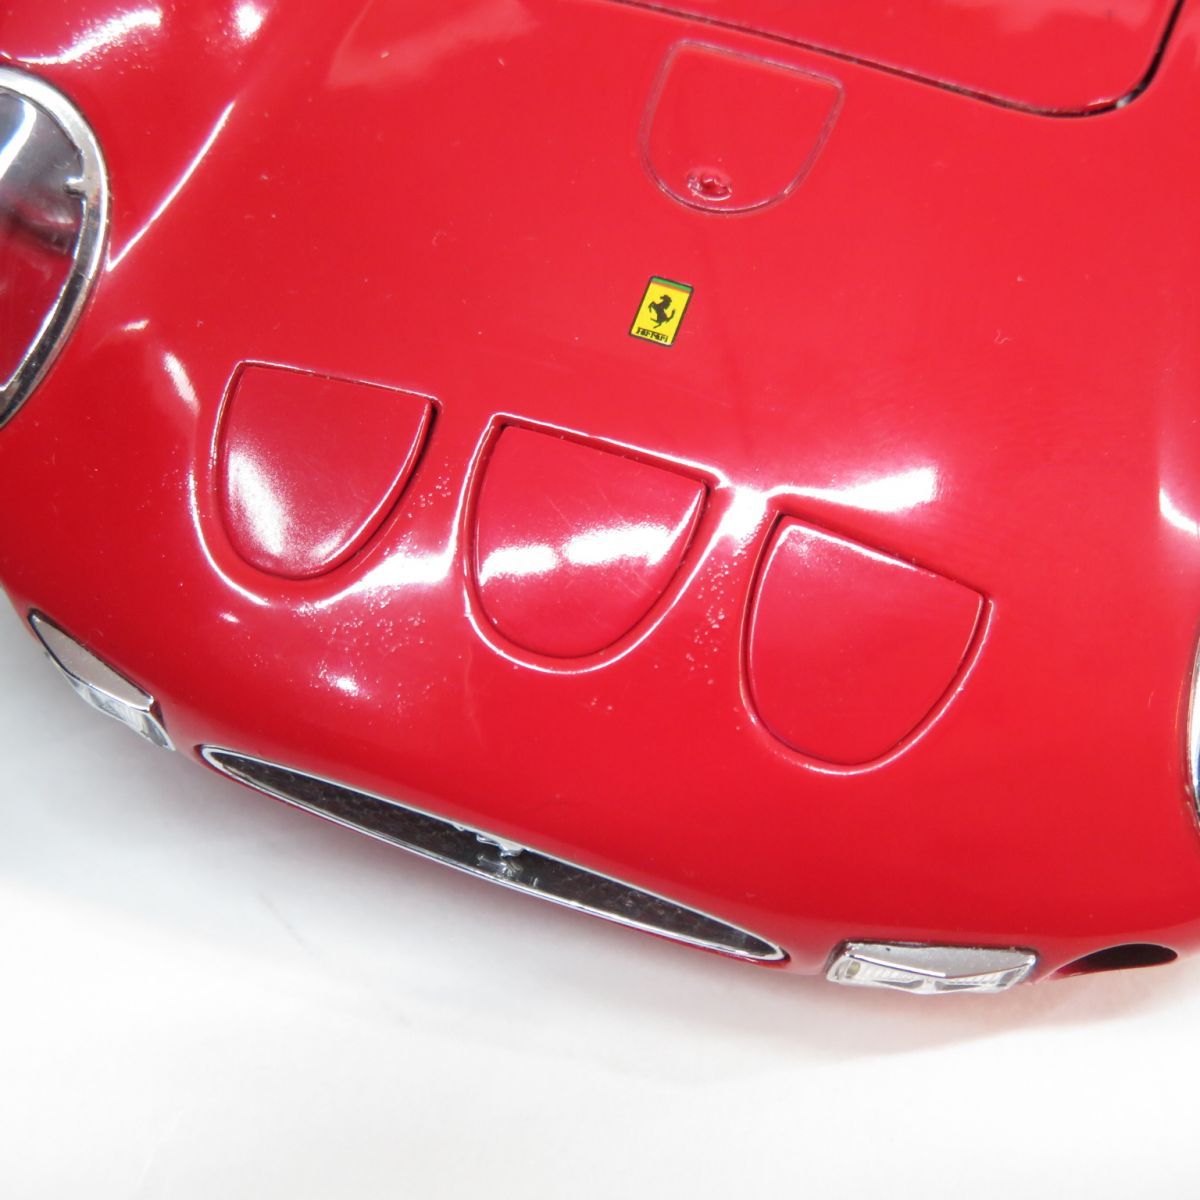 京商 1/18 フェラーリ 250 GTO レッド 08431R ミニカー ※中古 - メルカリ